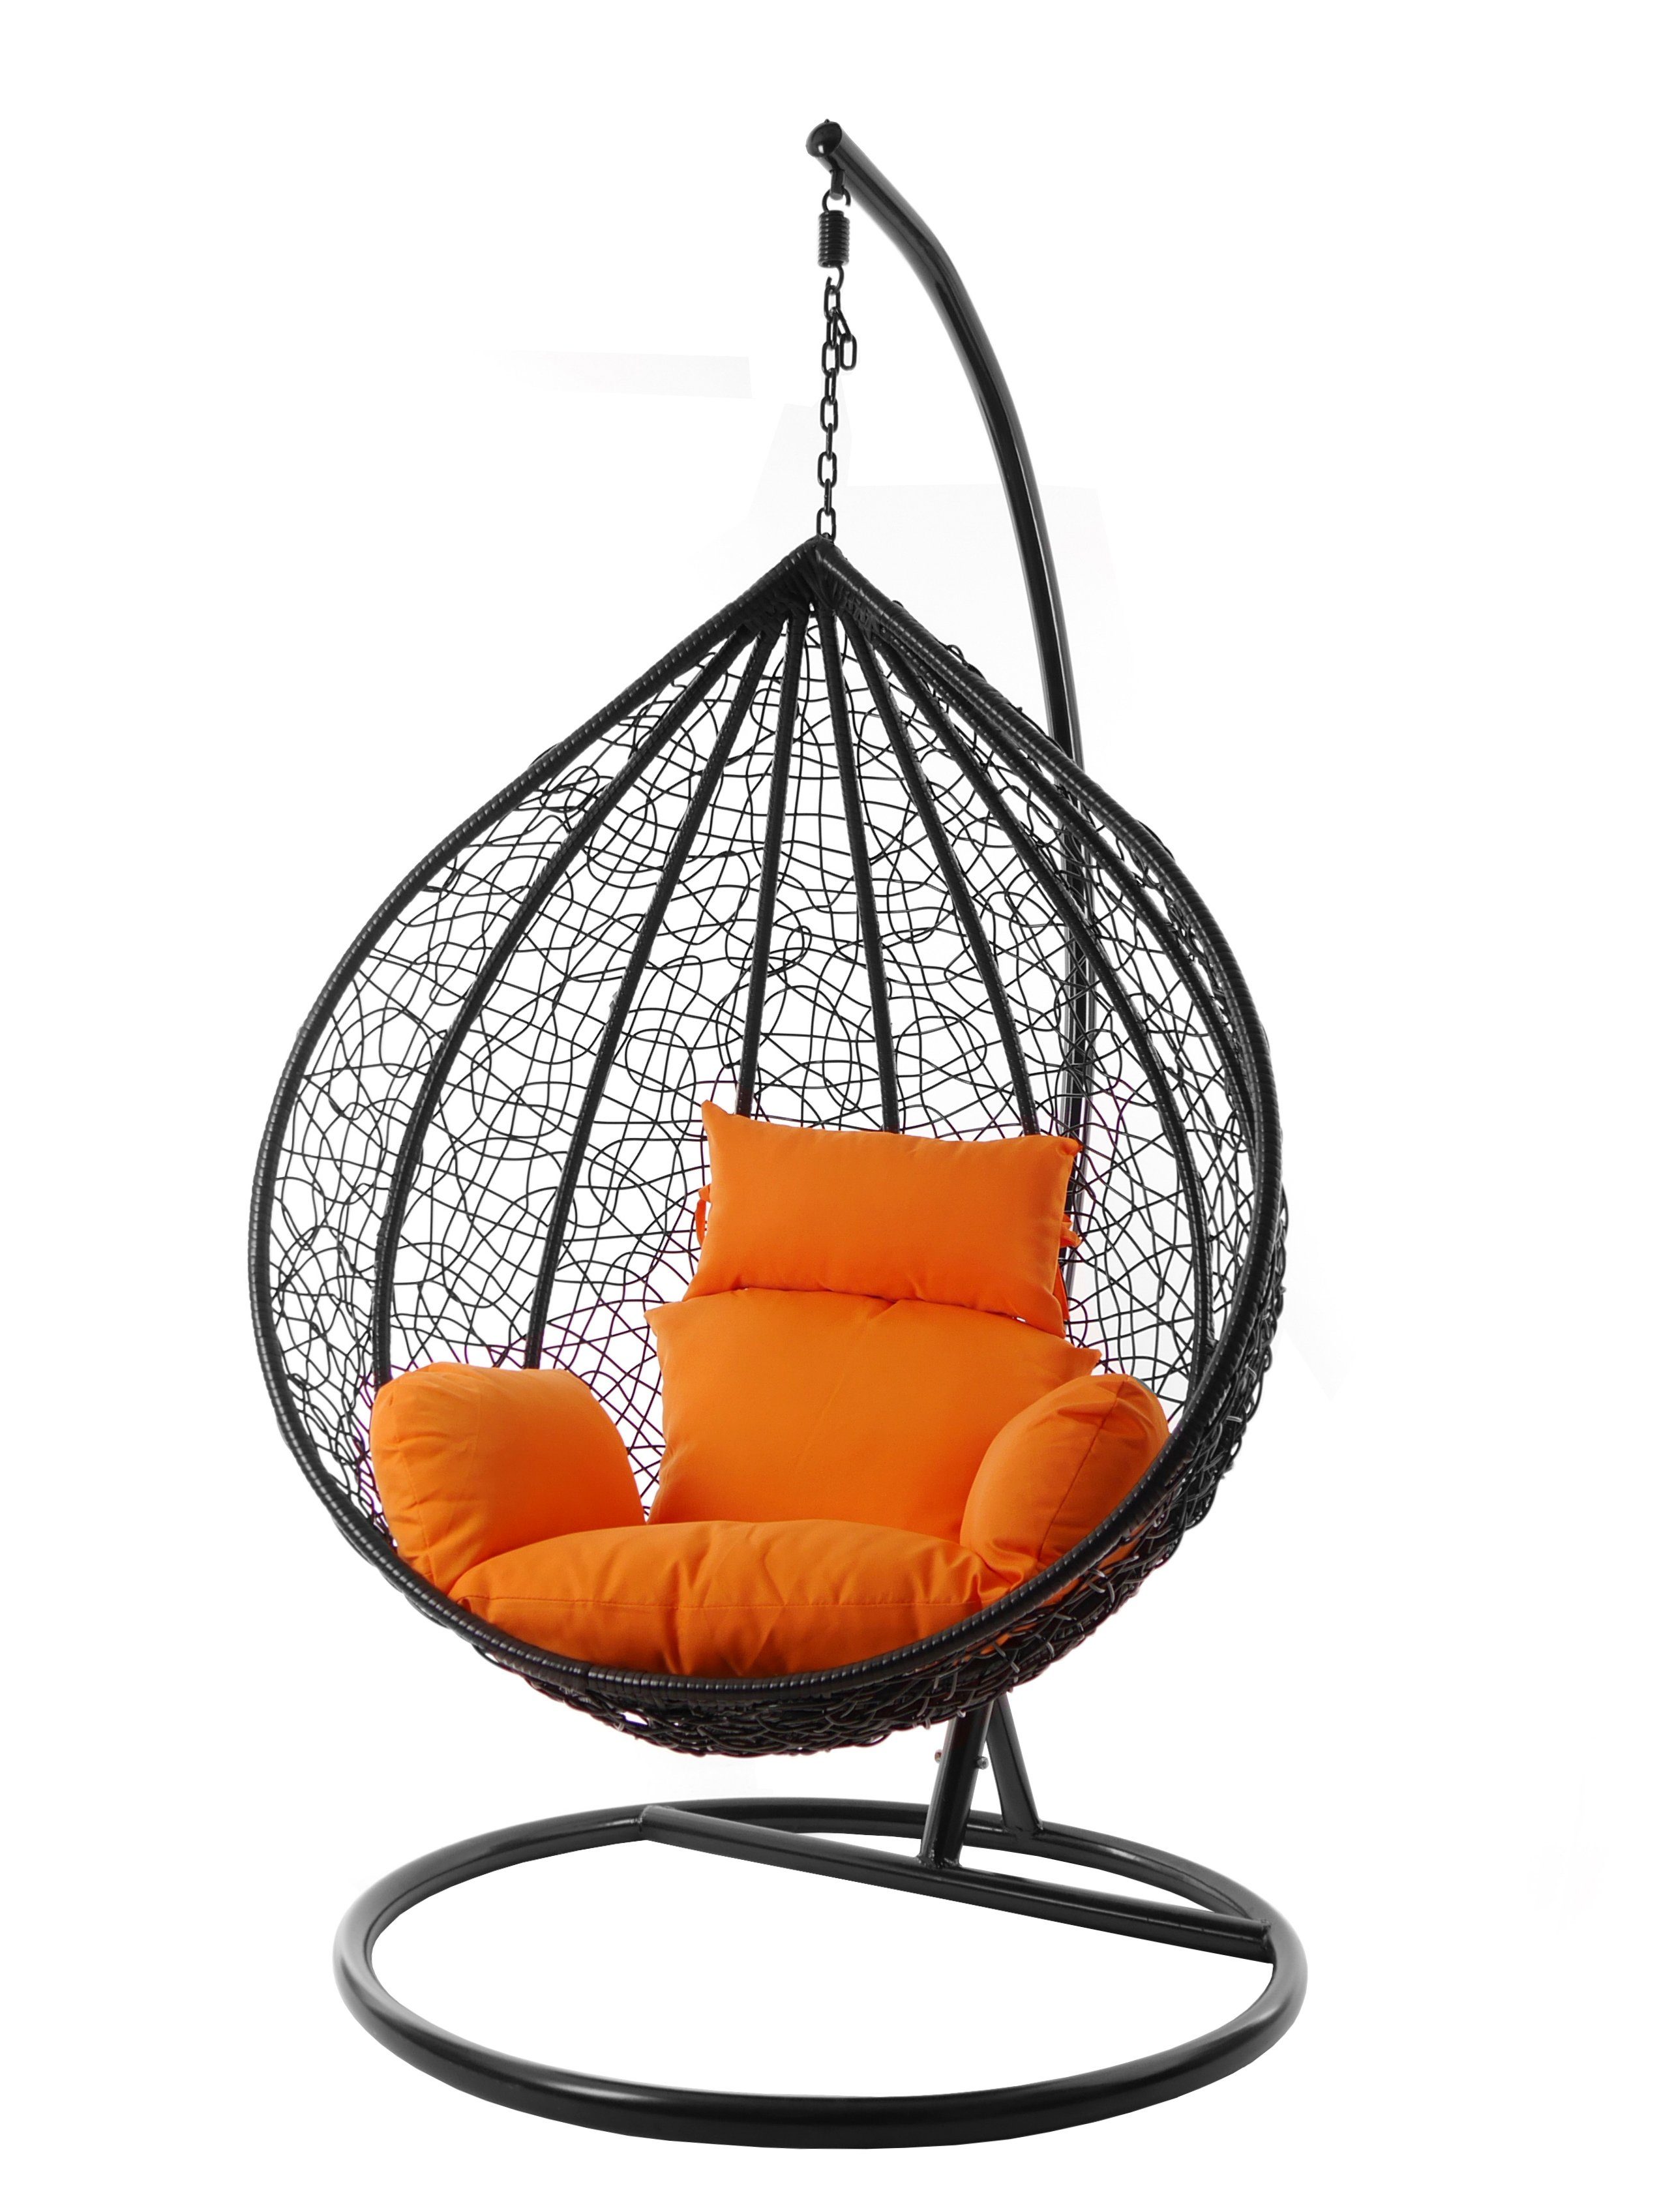 KIDEO Hängesessel Hängesessel MANACOR schwarz, XXL Swing Chair, edel, Gestell und Kissen inklusive, Nest-Kissen, verschiedene Farben orange (3030 tangerine)